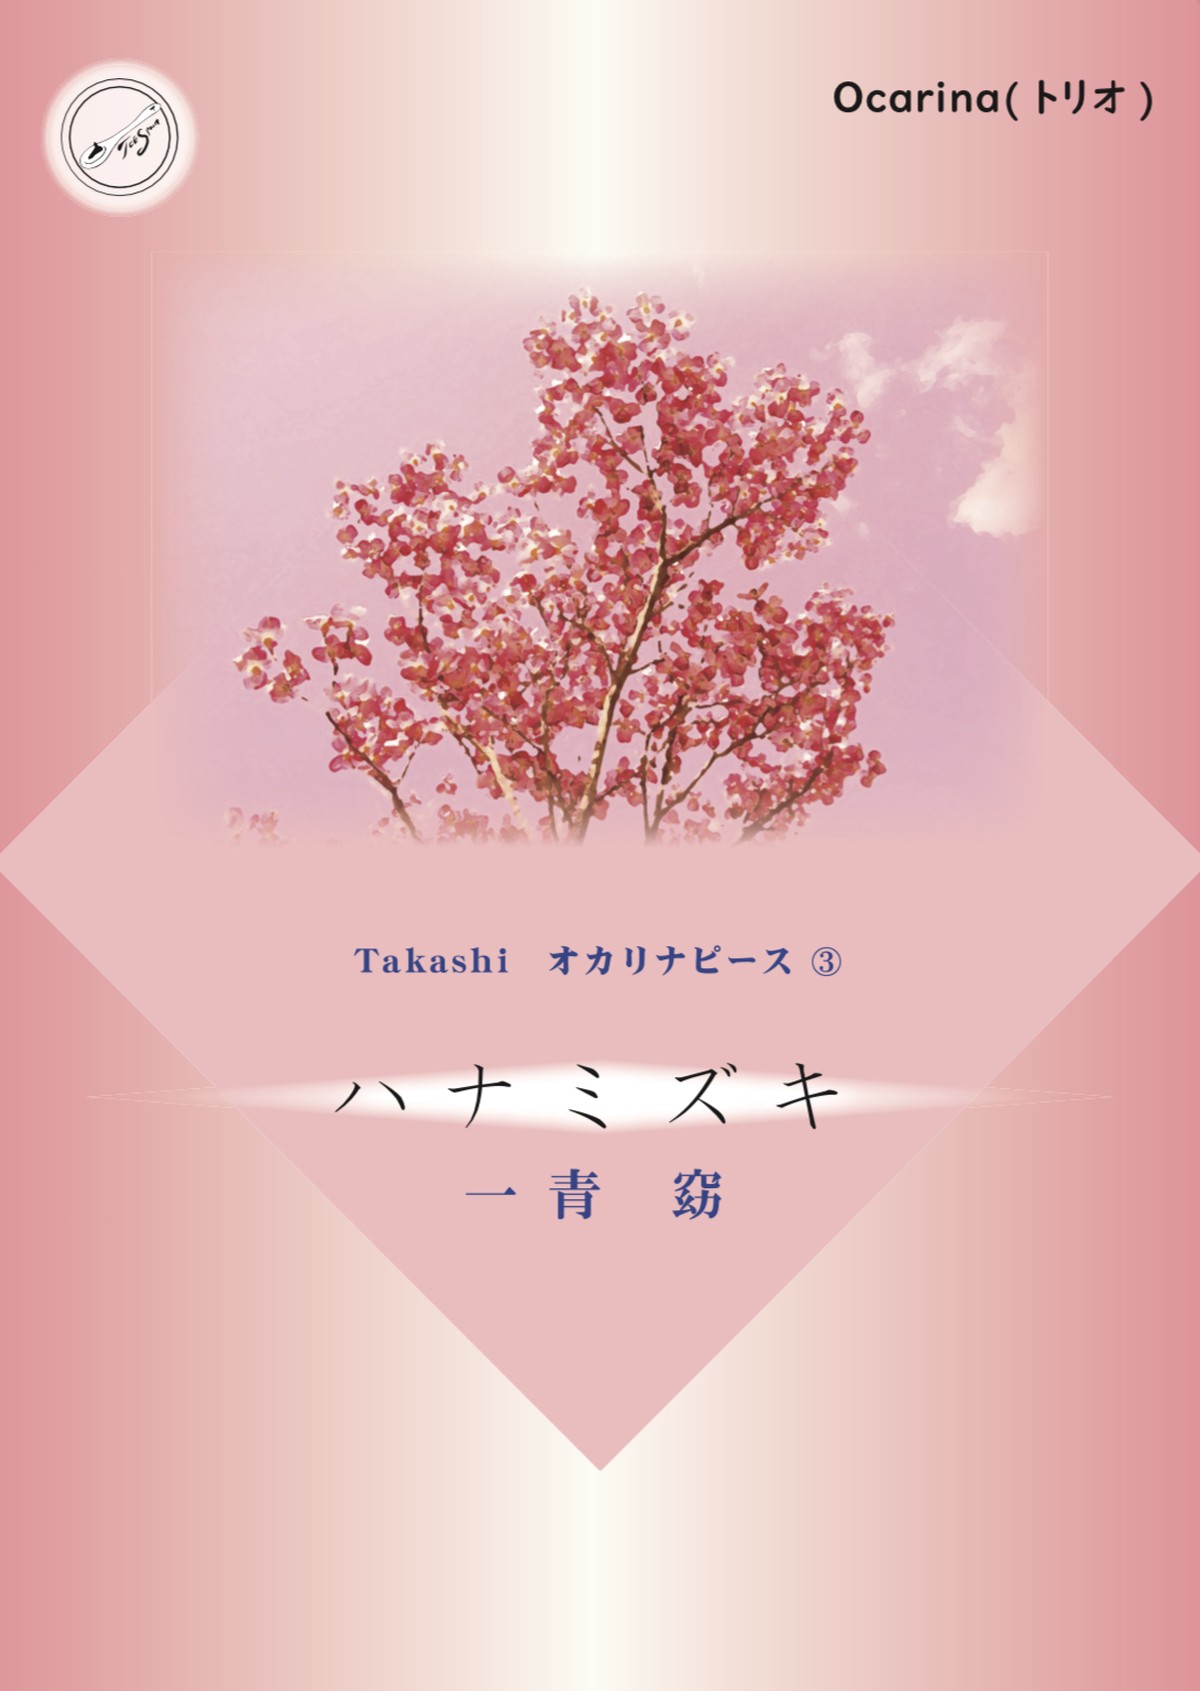 12 発売 オカリナ楽譜 Takashi オカリナピース ハナミズキ 一青窈 Tee Spoon